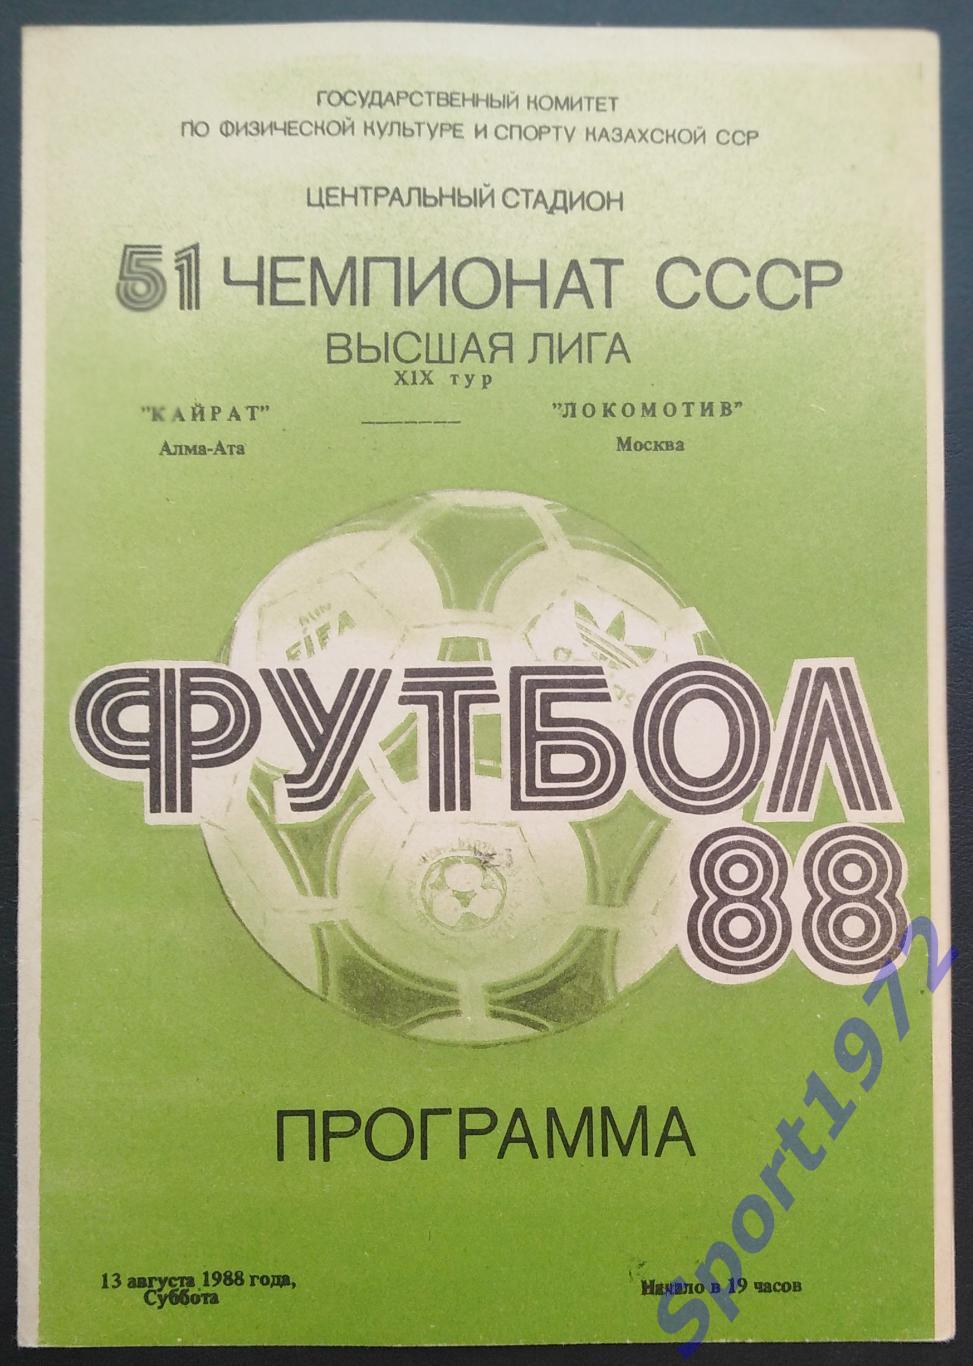 Кайрат Алма-Ата - Локомотив Москва - 13.08.1988